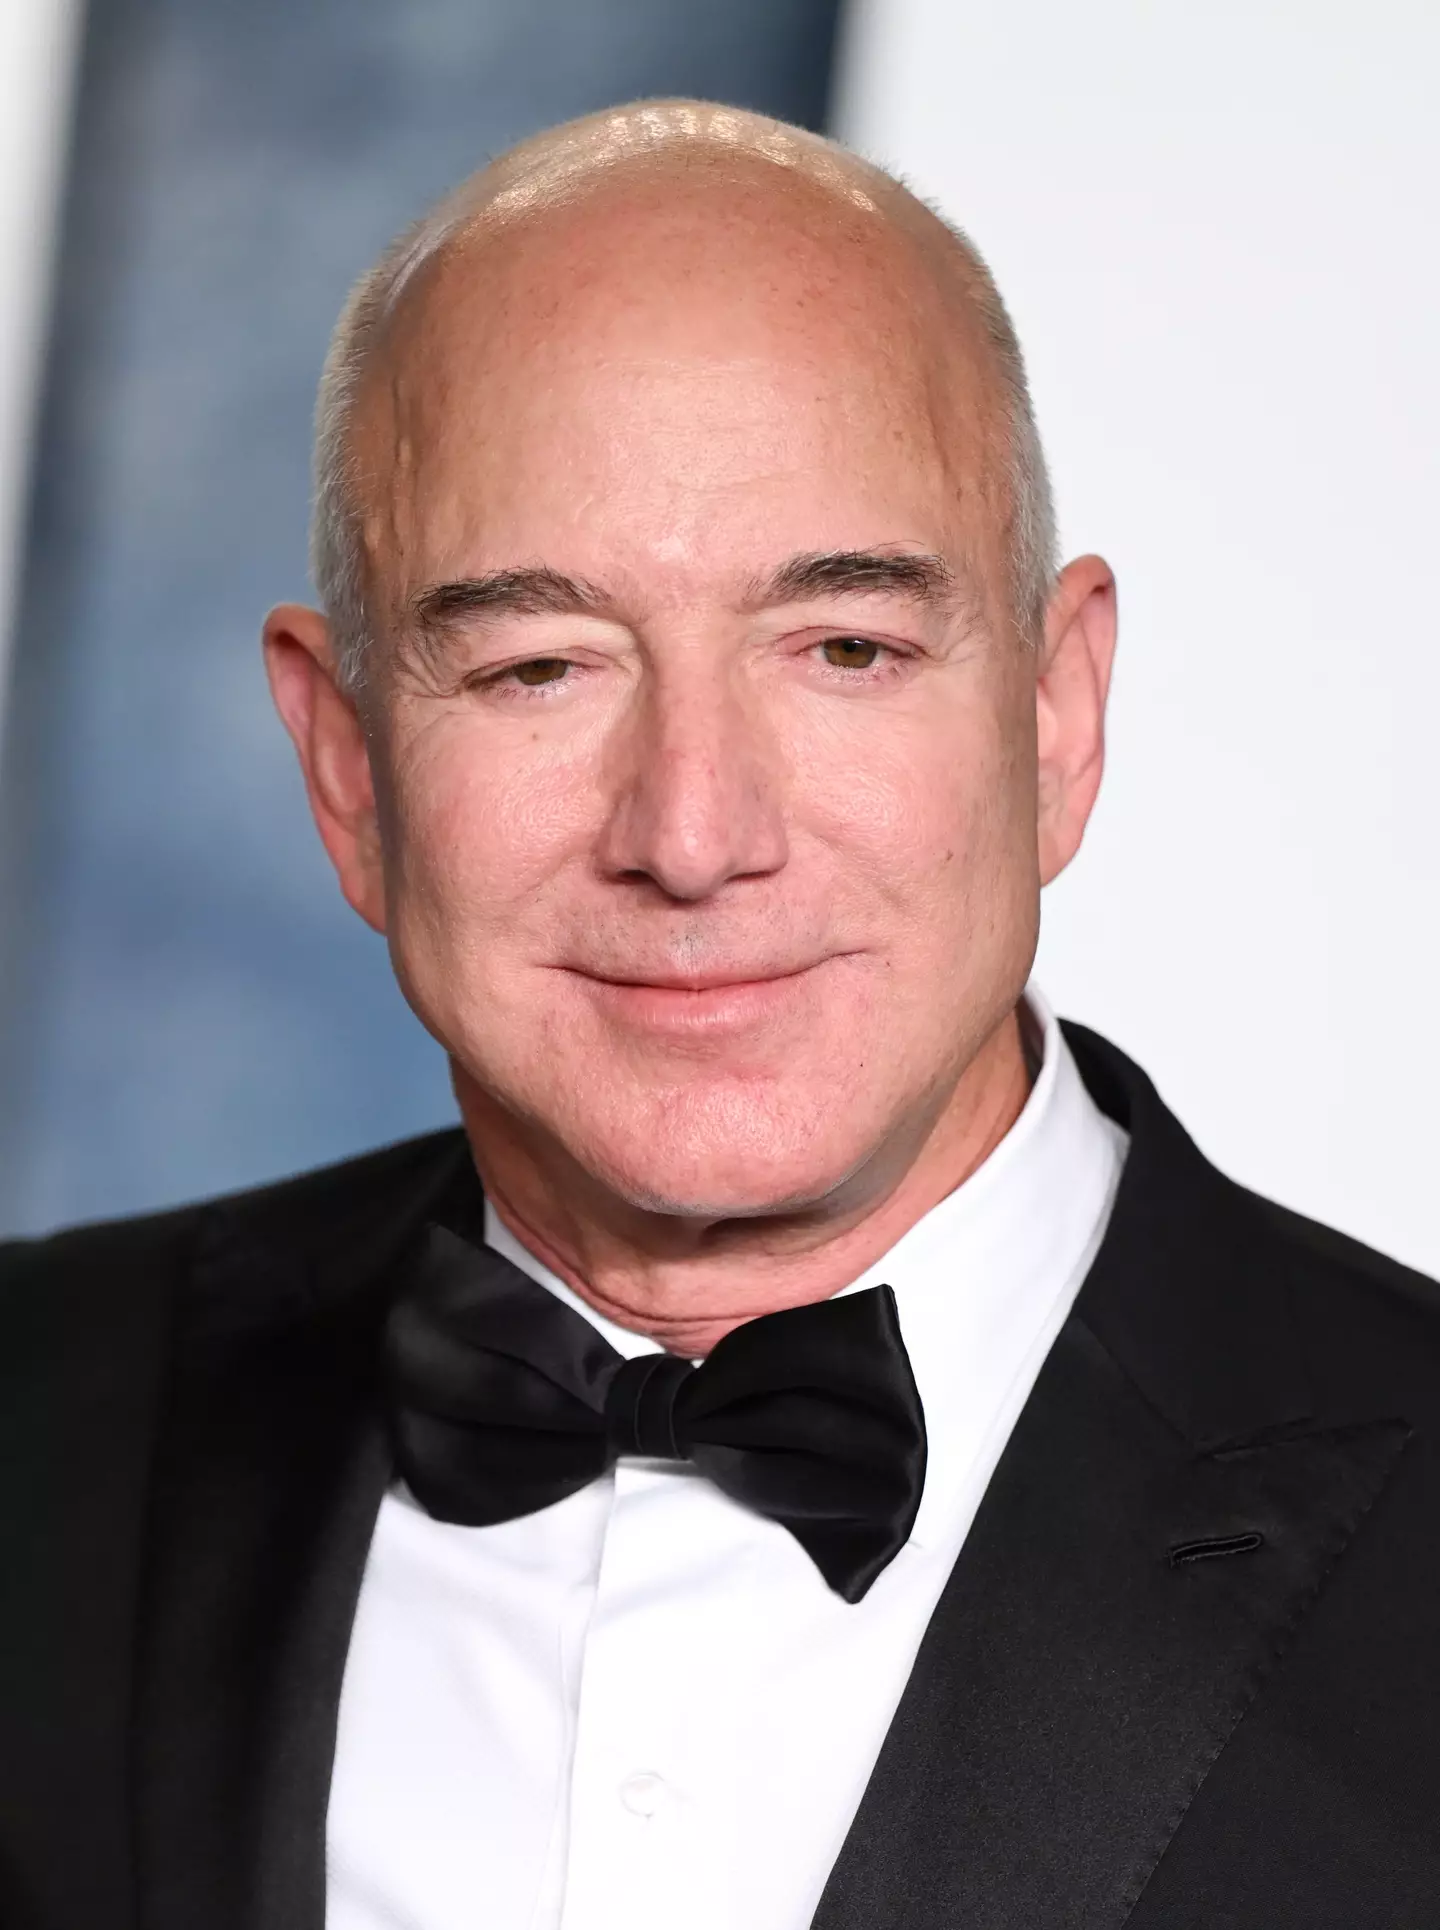 Jeff Bezos has spent $42 million on the clock.